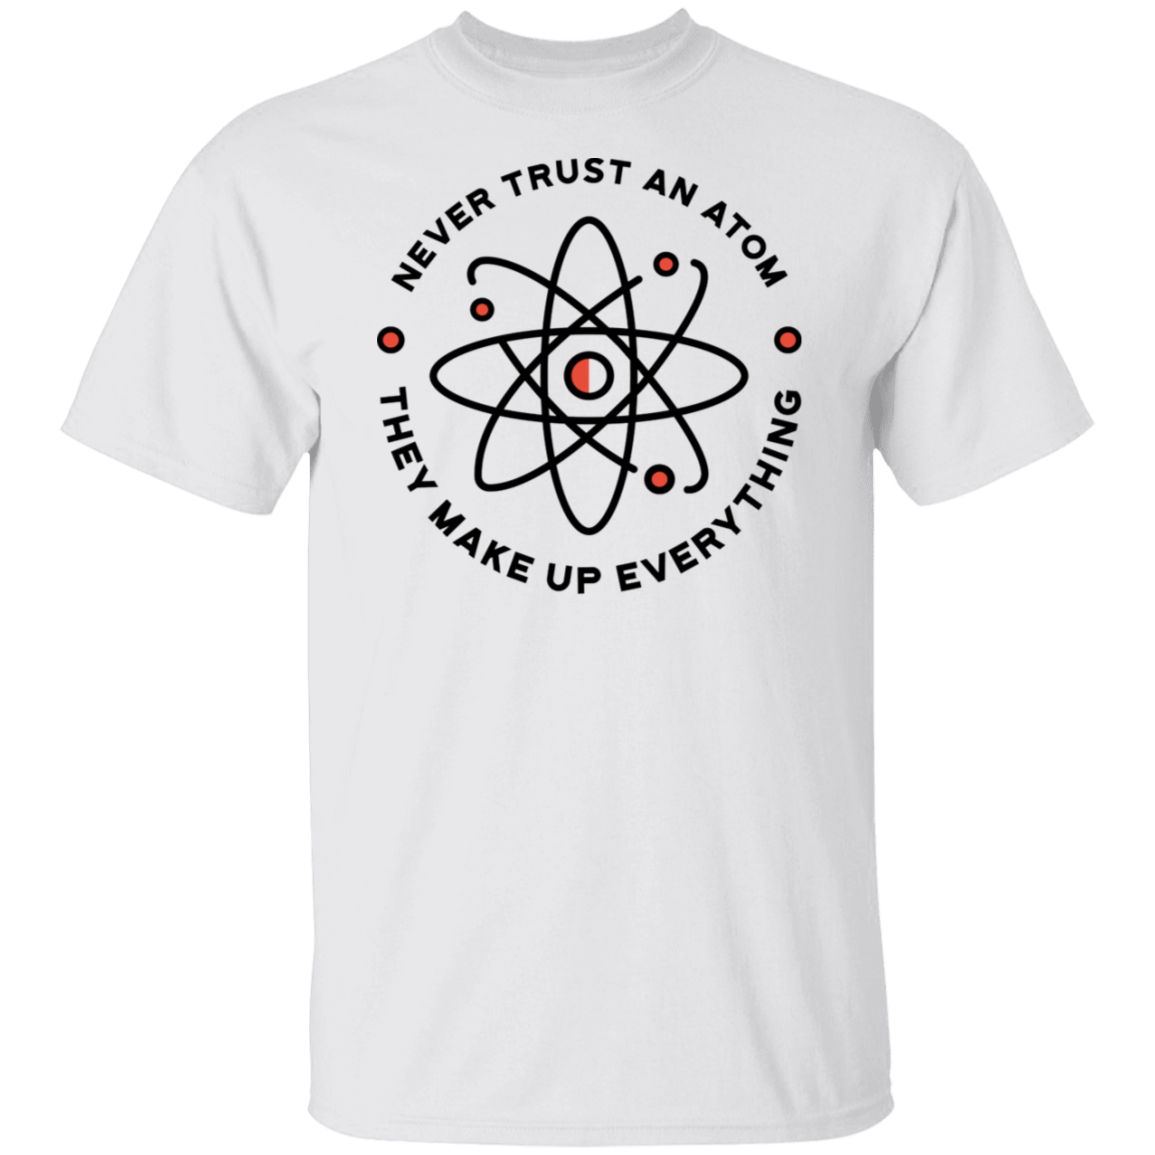 Never Trust An Atom T-Shirt